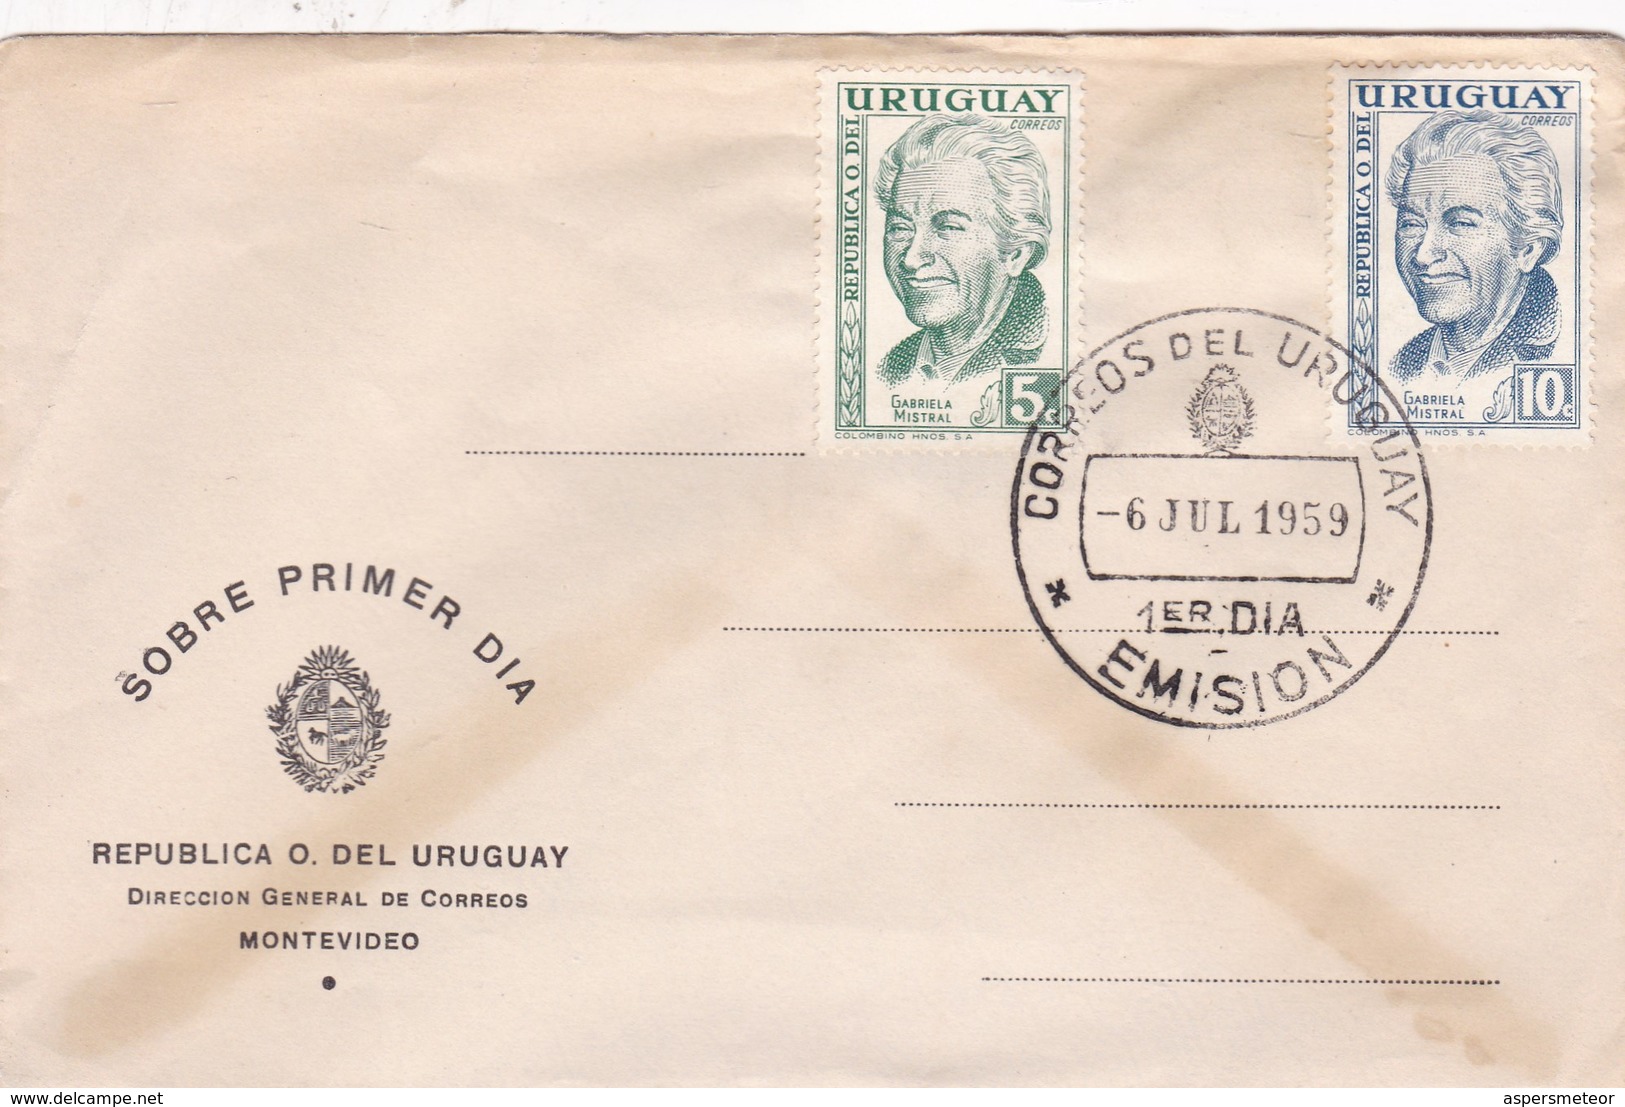 SOBRE PRIMER DIA FDC 1959. 2 COLOR STAMPS GABRIELA MISTRAL- BLEUP - Uruguay